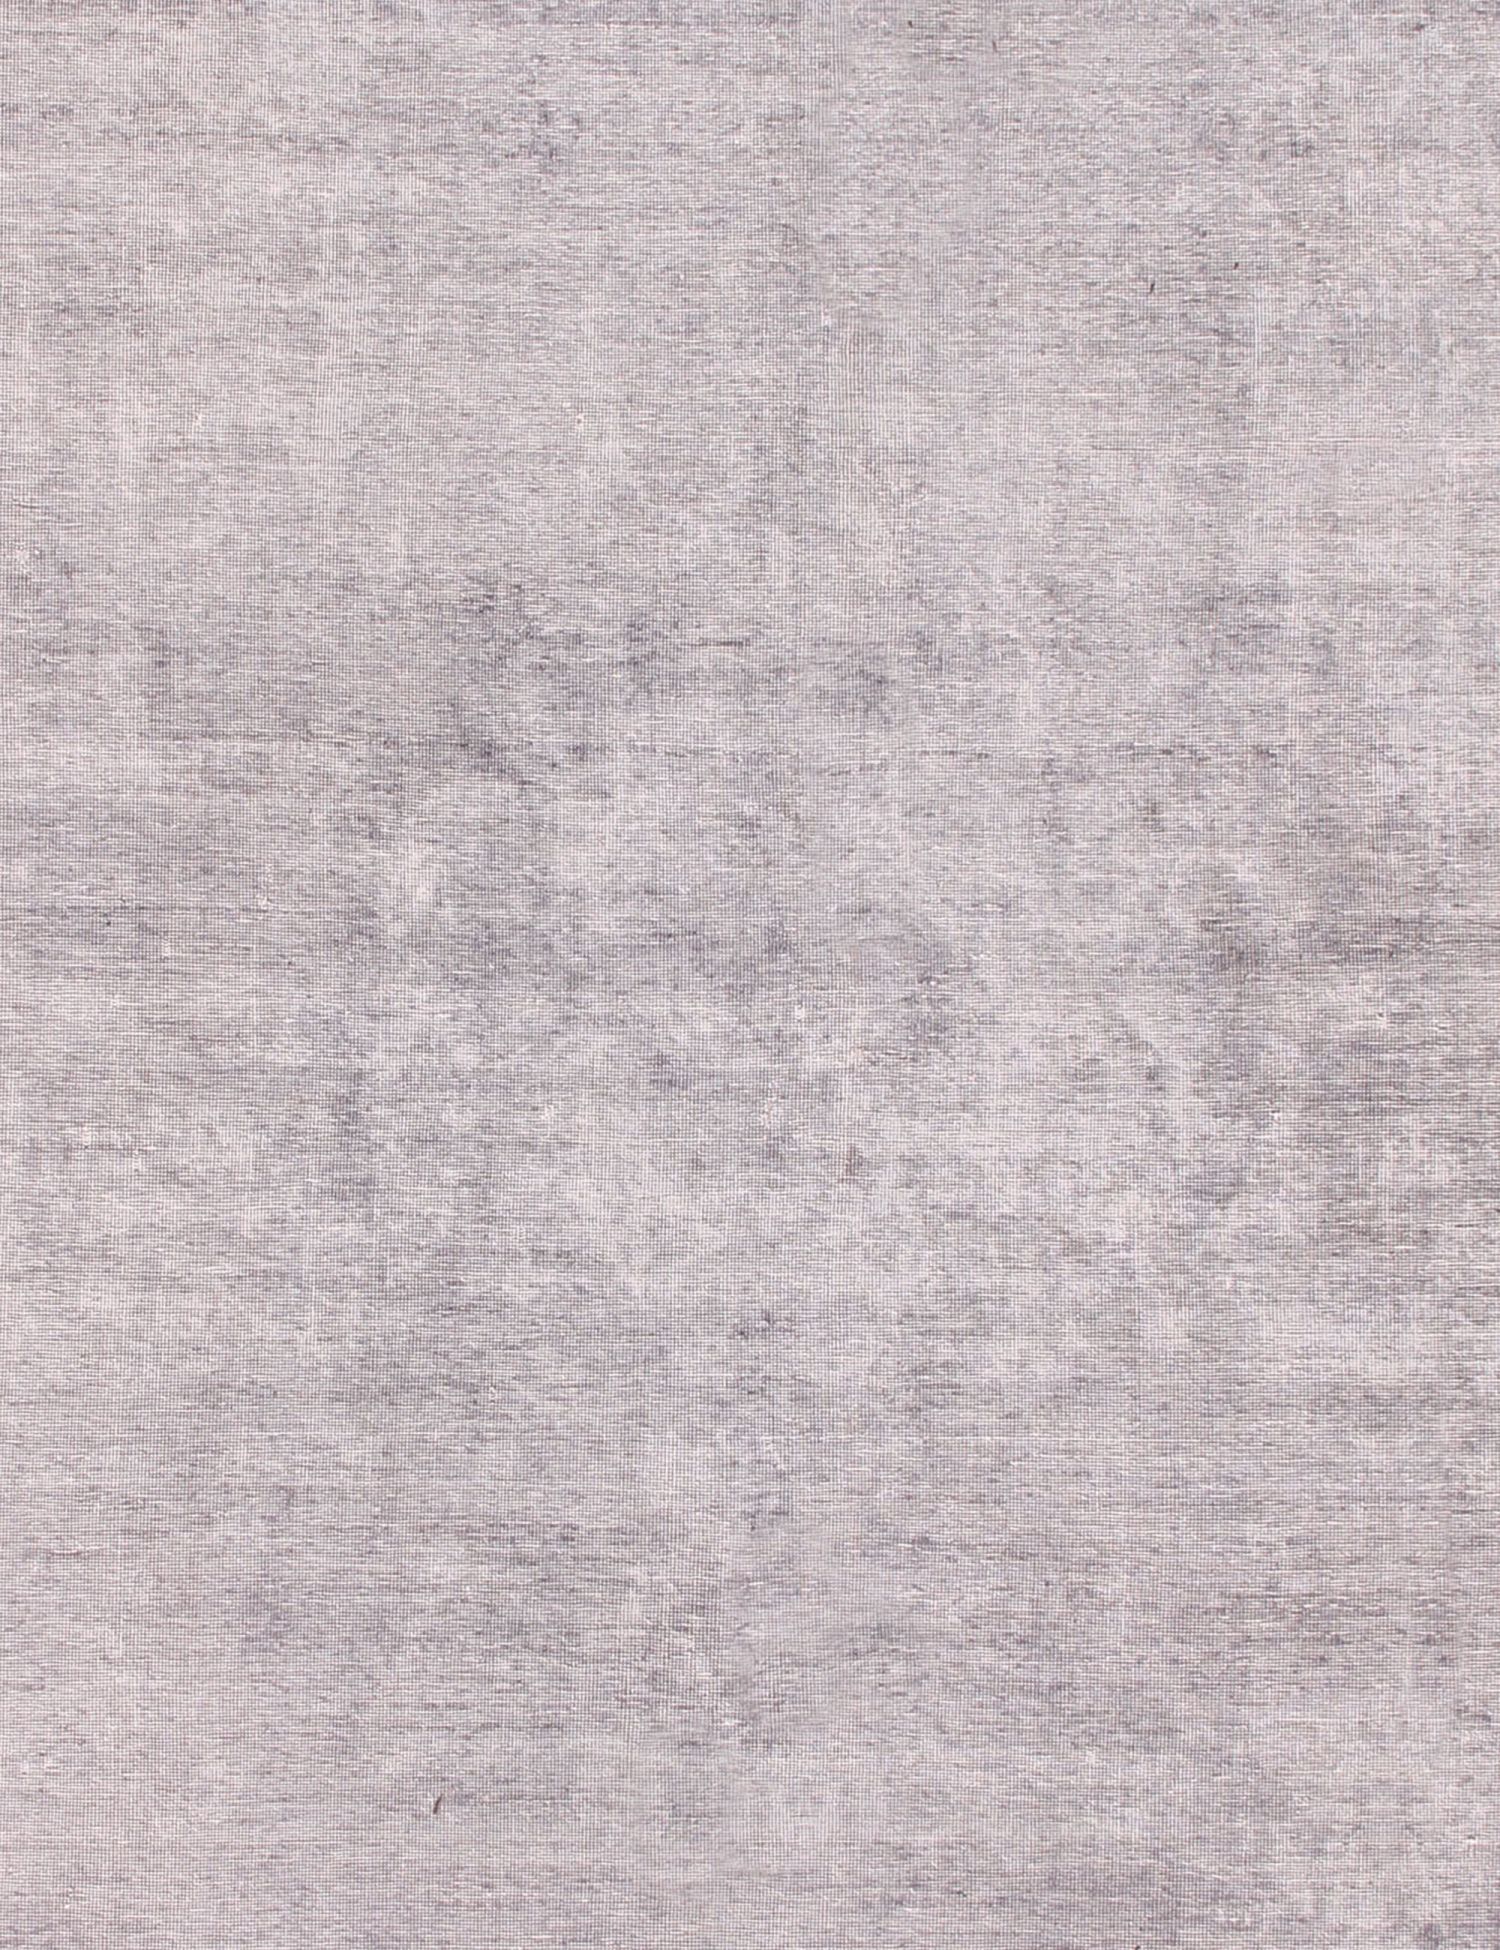 Quadrat  Vintage Teppich  grau <br/>242 x 242 cm